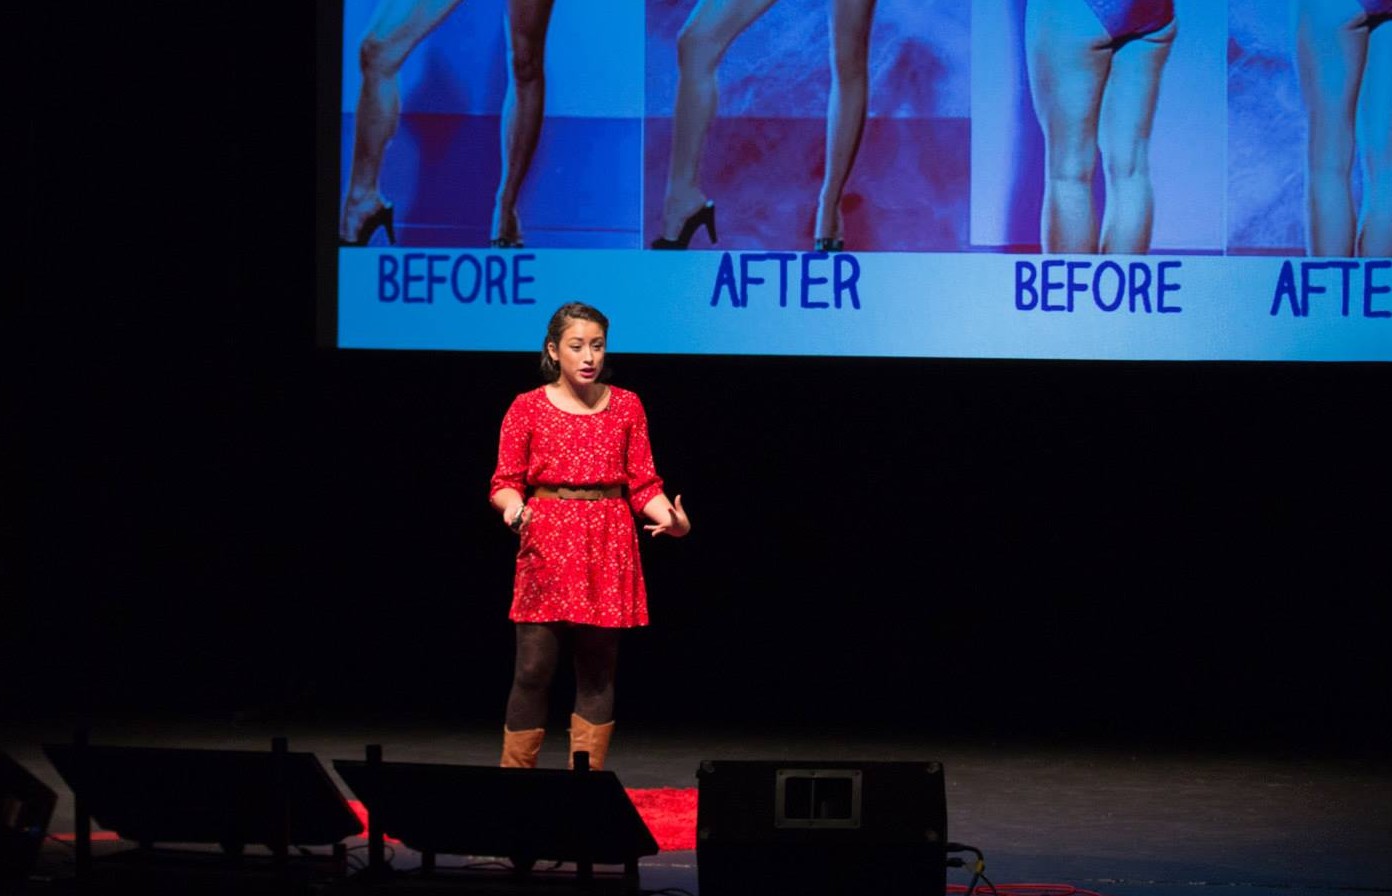 TEDx Talk: “Feminism isn’t dead, it’s gone viral!”